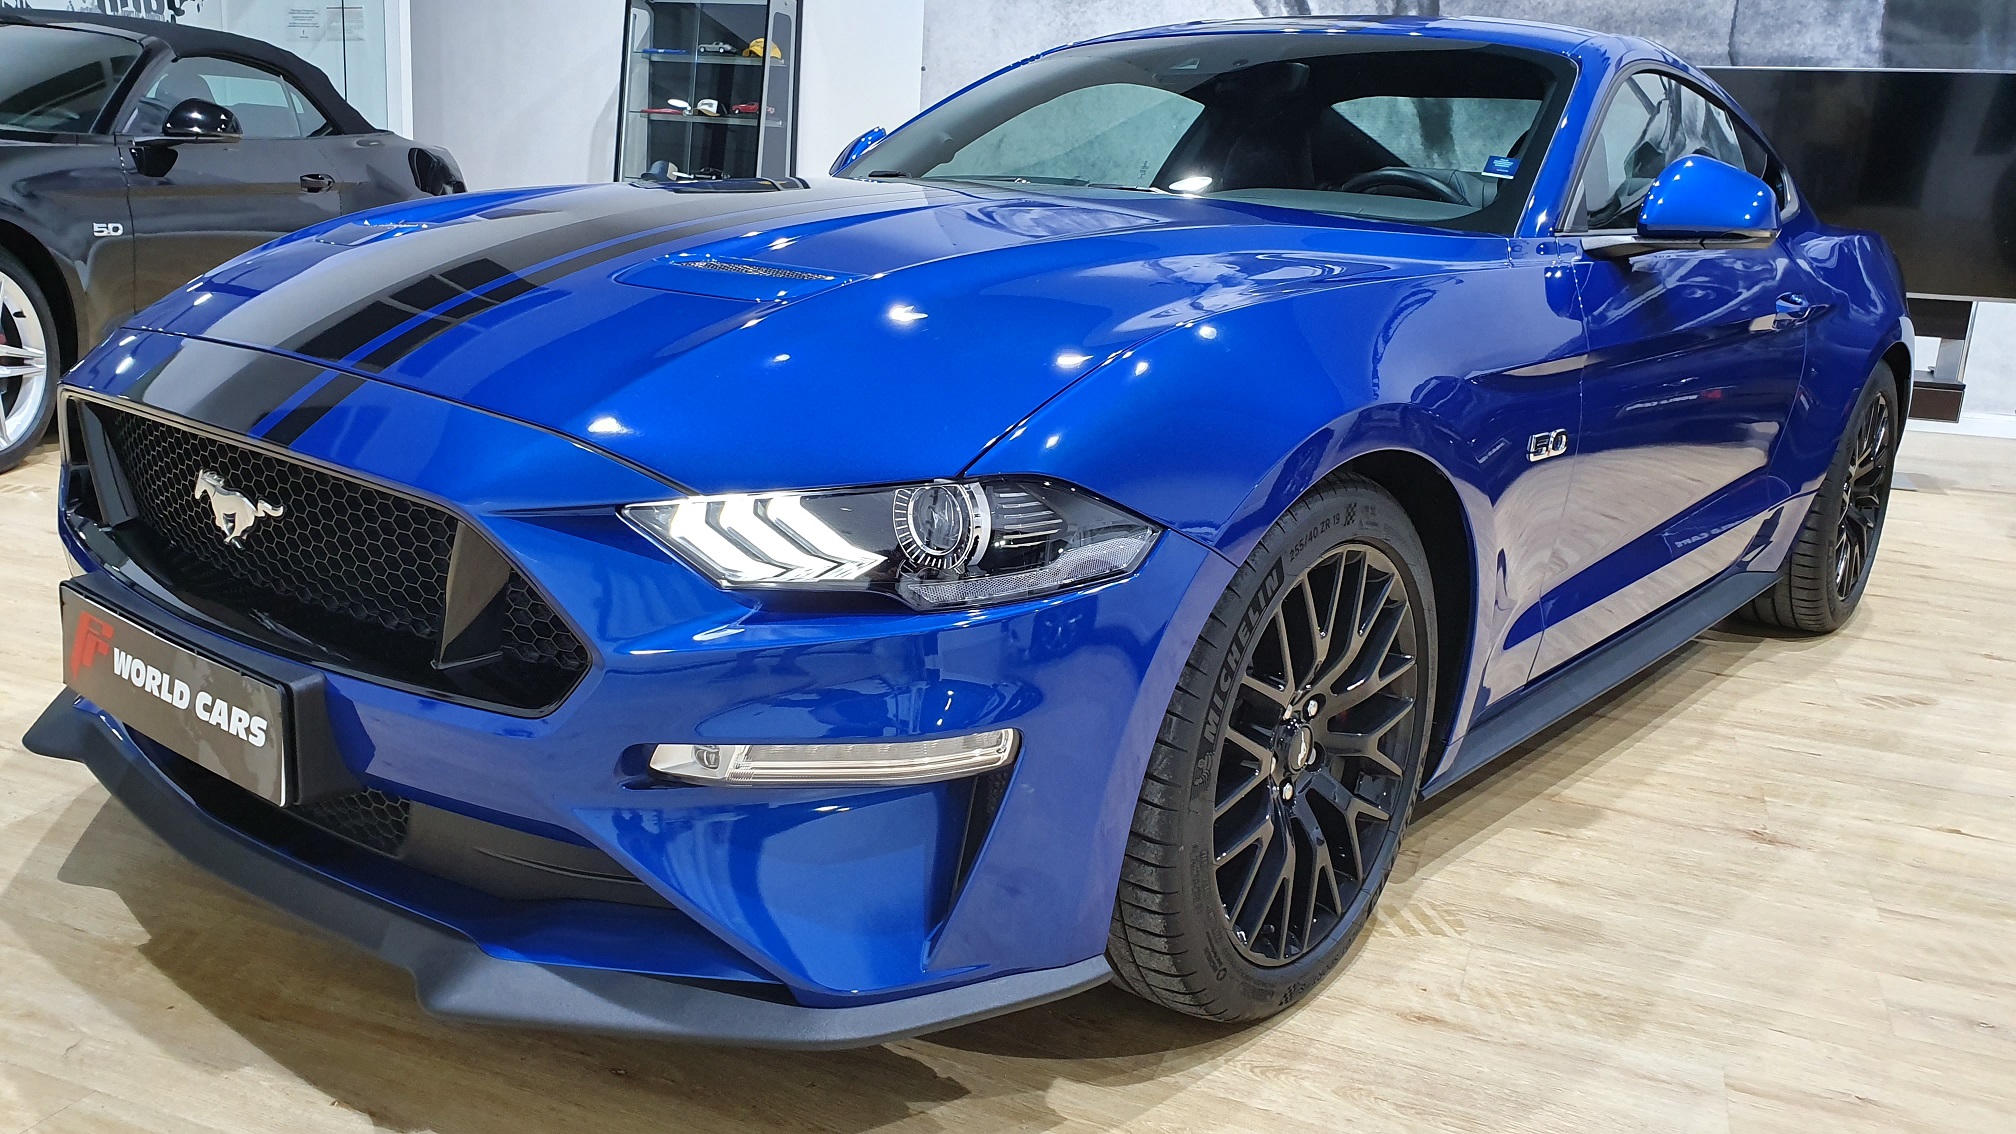 Ford Mustang GT Premium Coupé Fastback, NUEVO MODELO 2019. 50.500 €. TODO INCLUIDO. - FR World | Importación de vehículos americanos